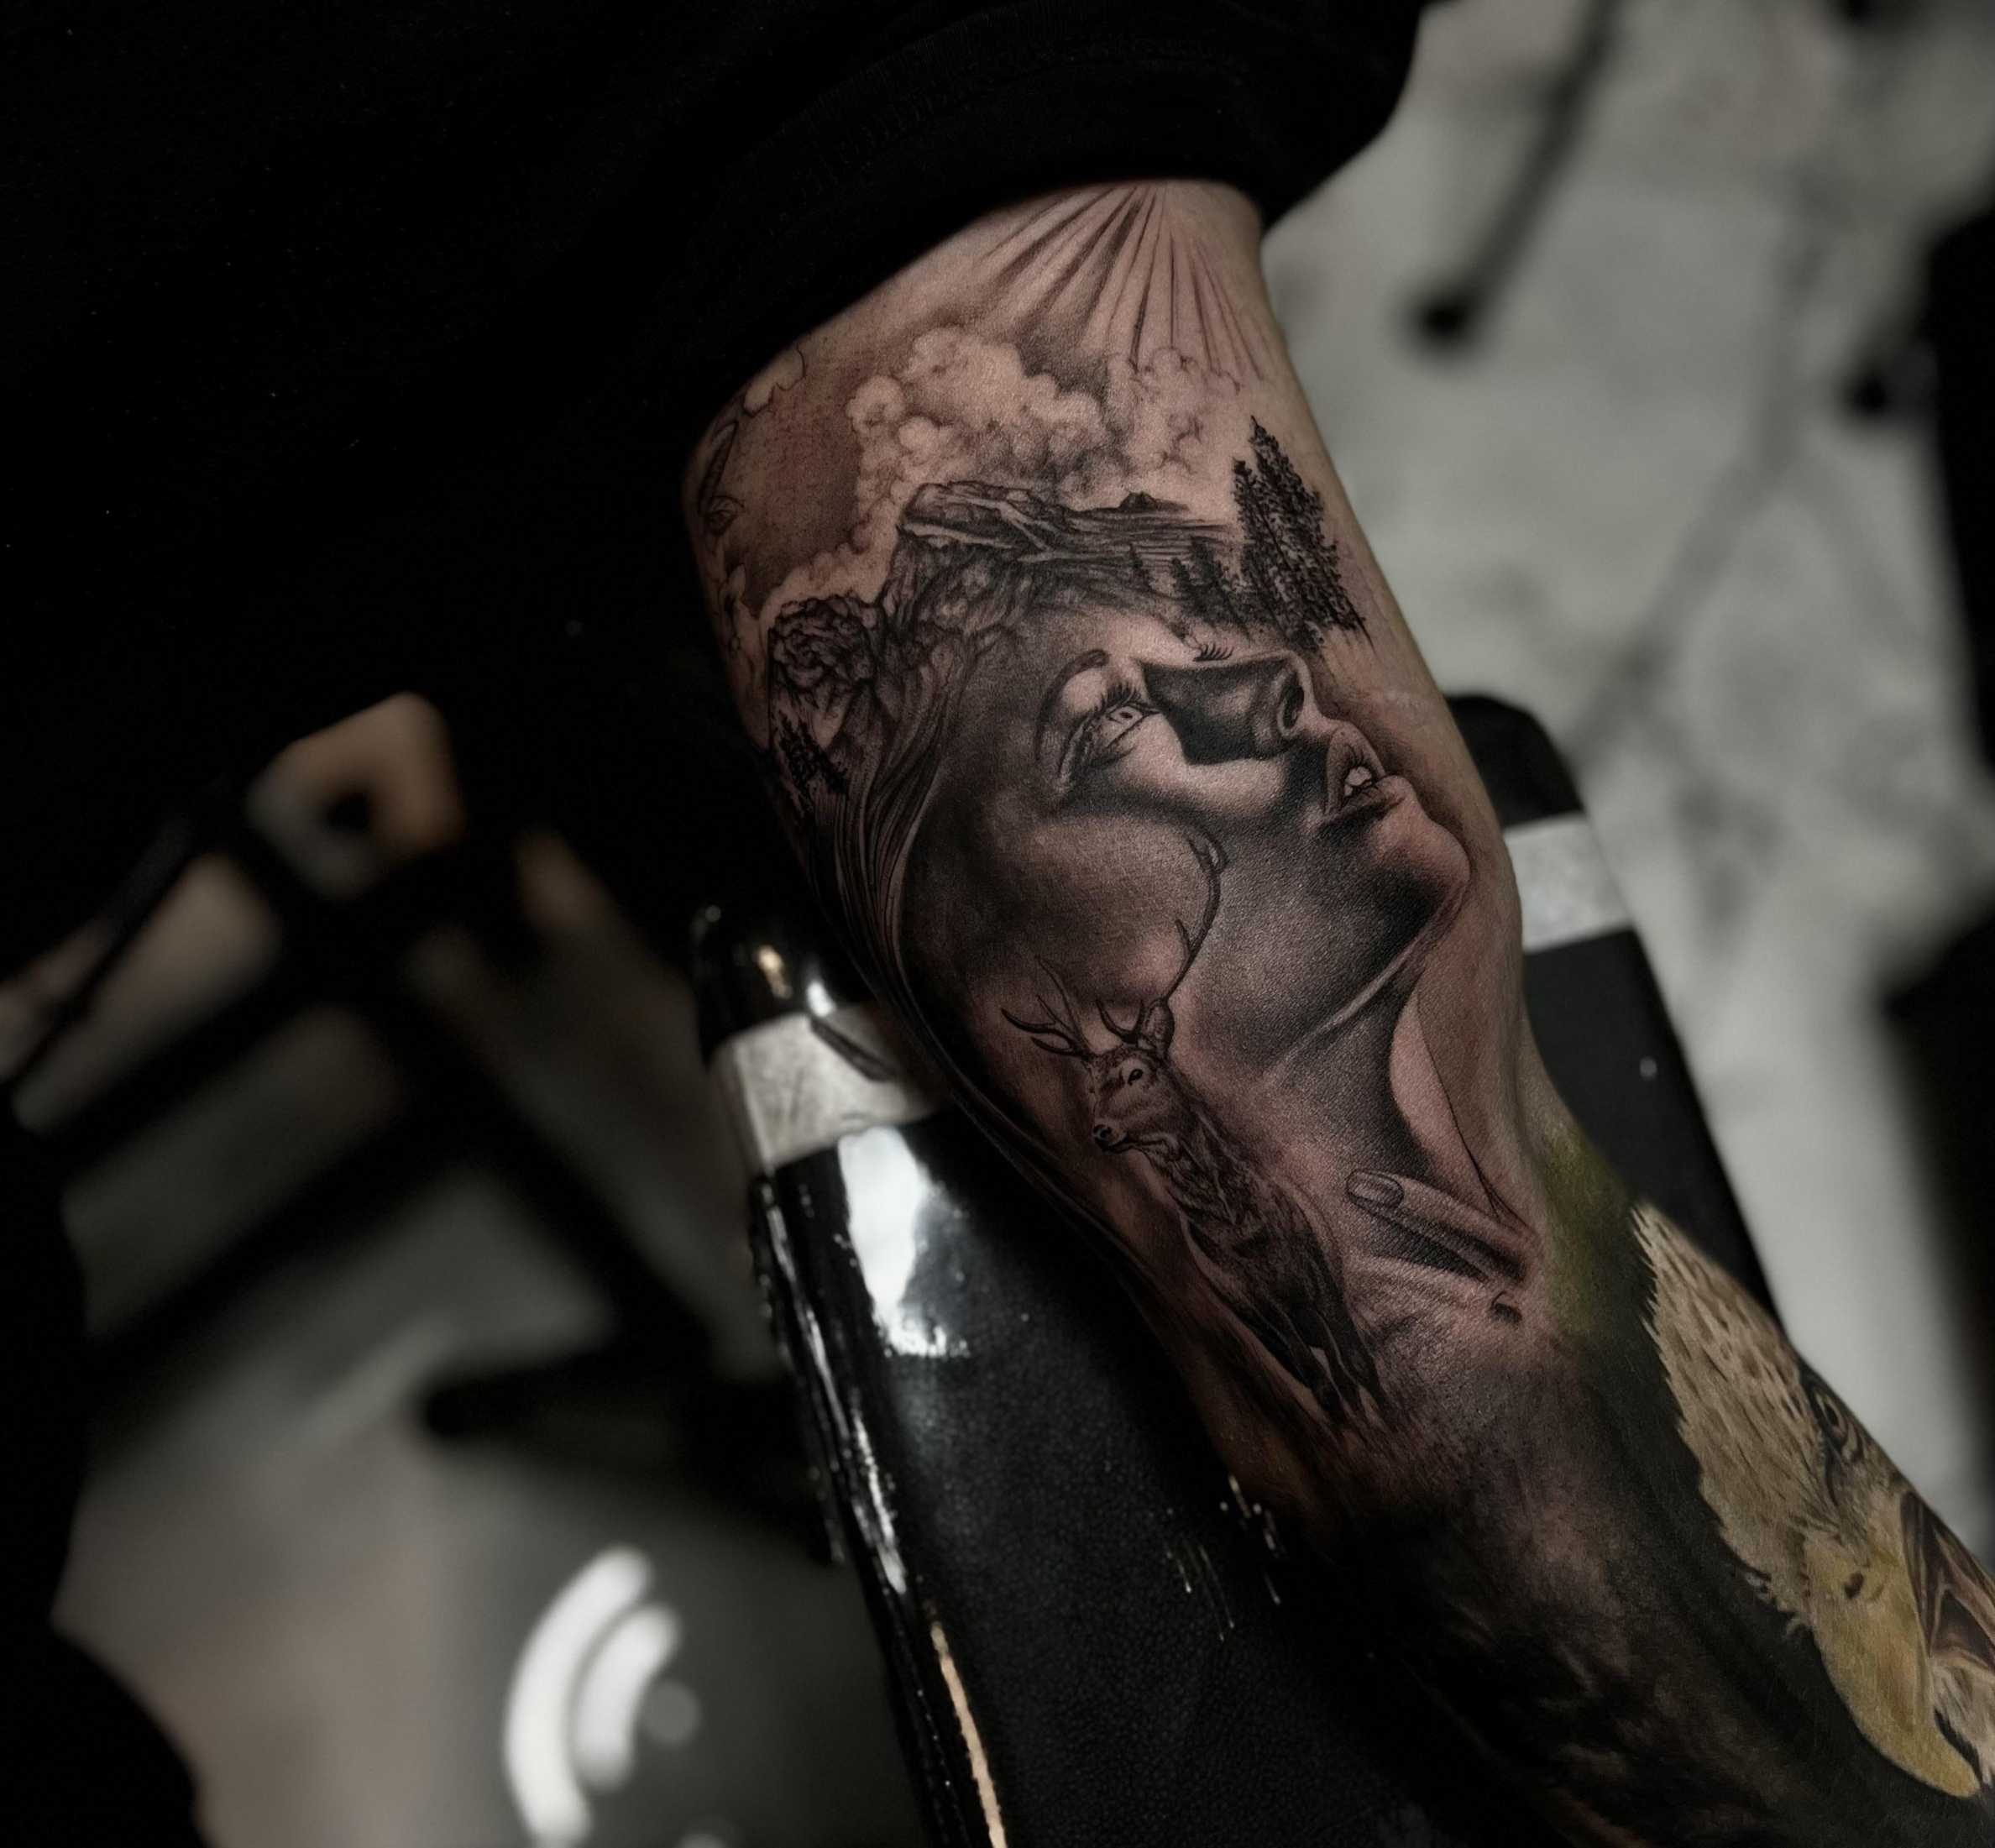 Inner bicep tattoo done at Inkmortal Tattoo by OJ in Redbank NJ